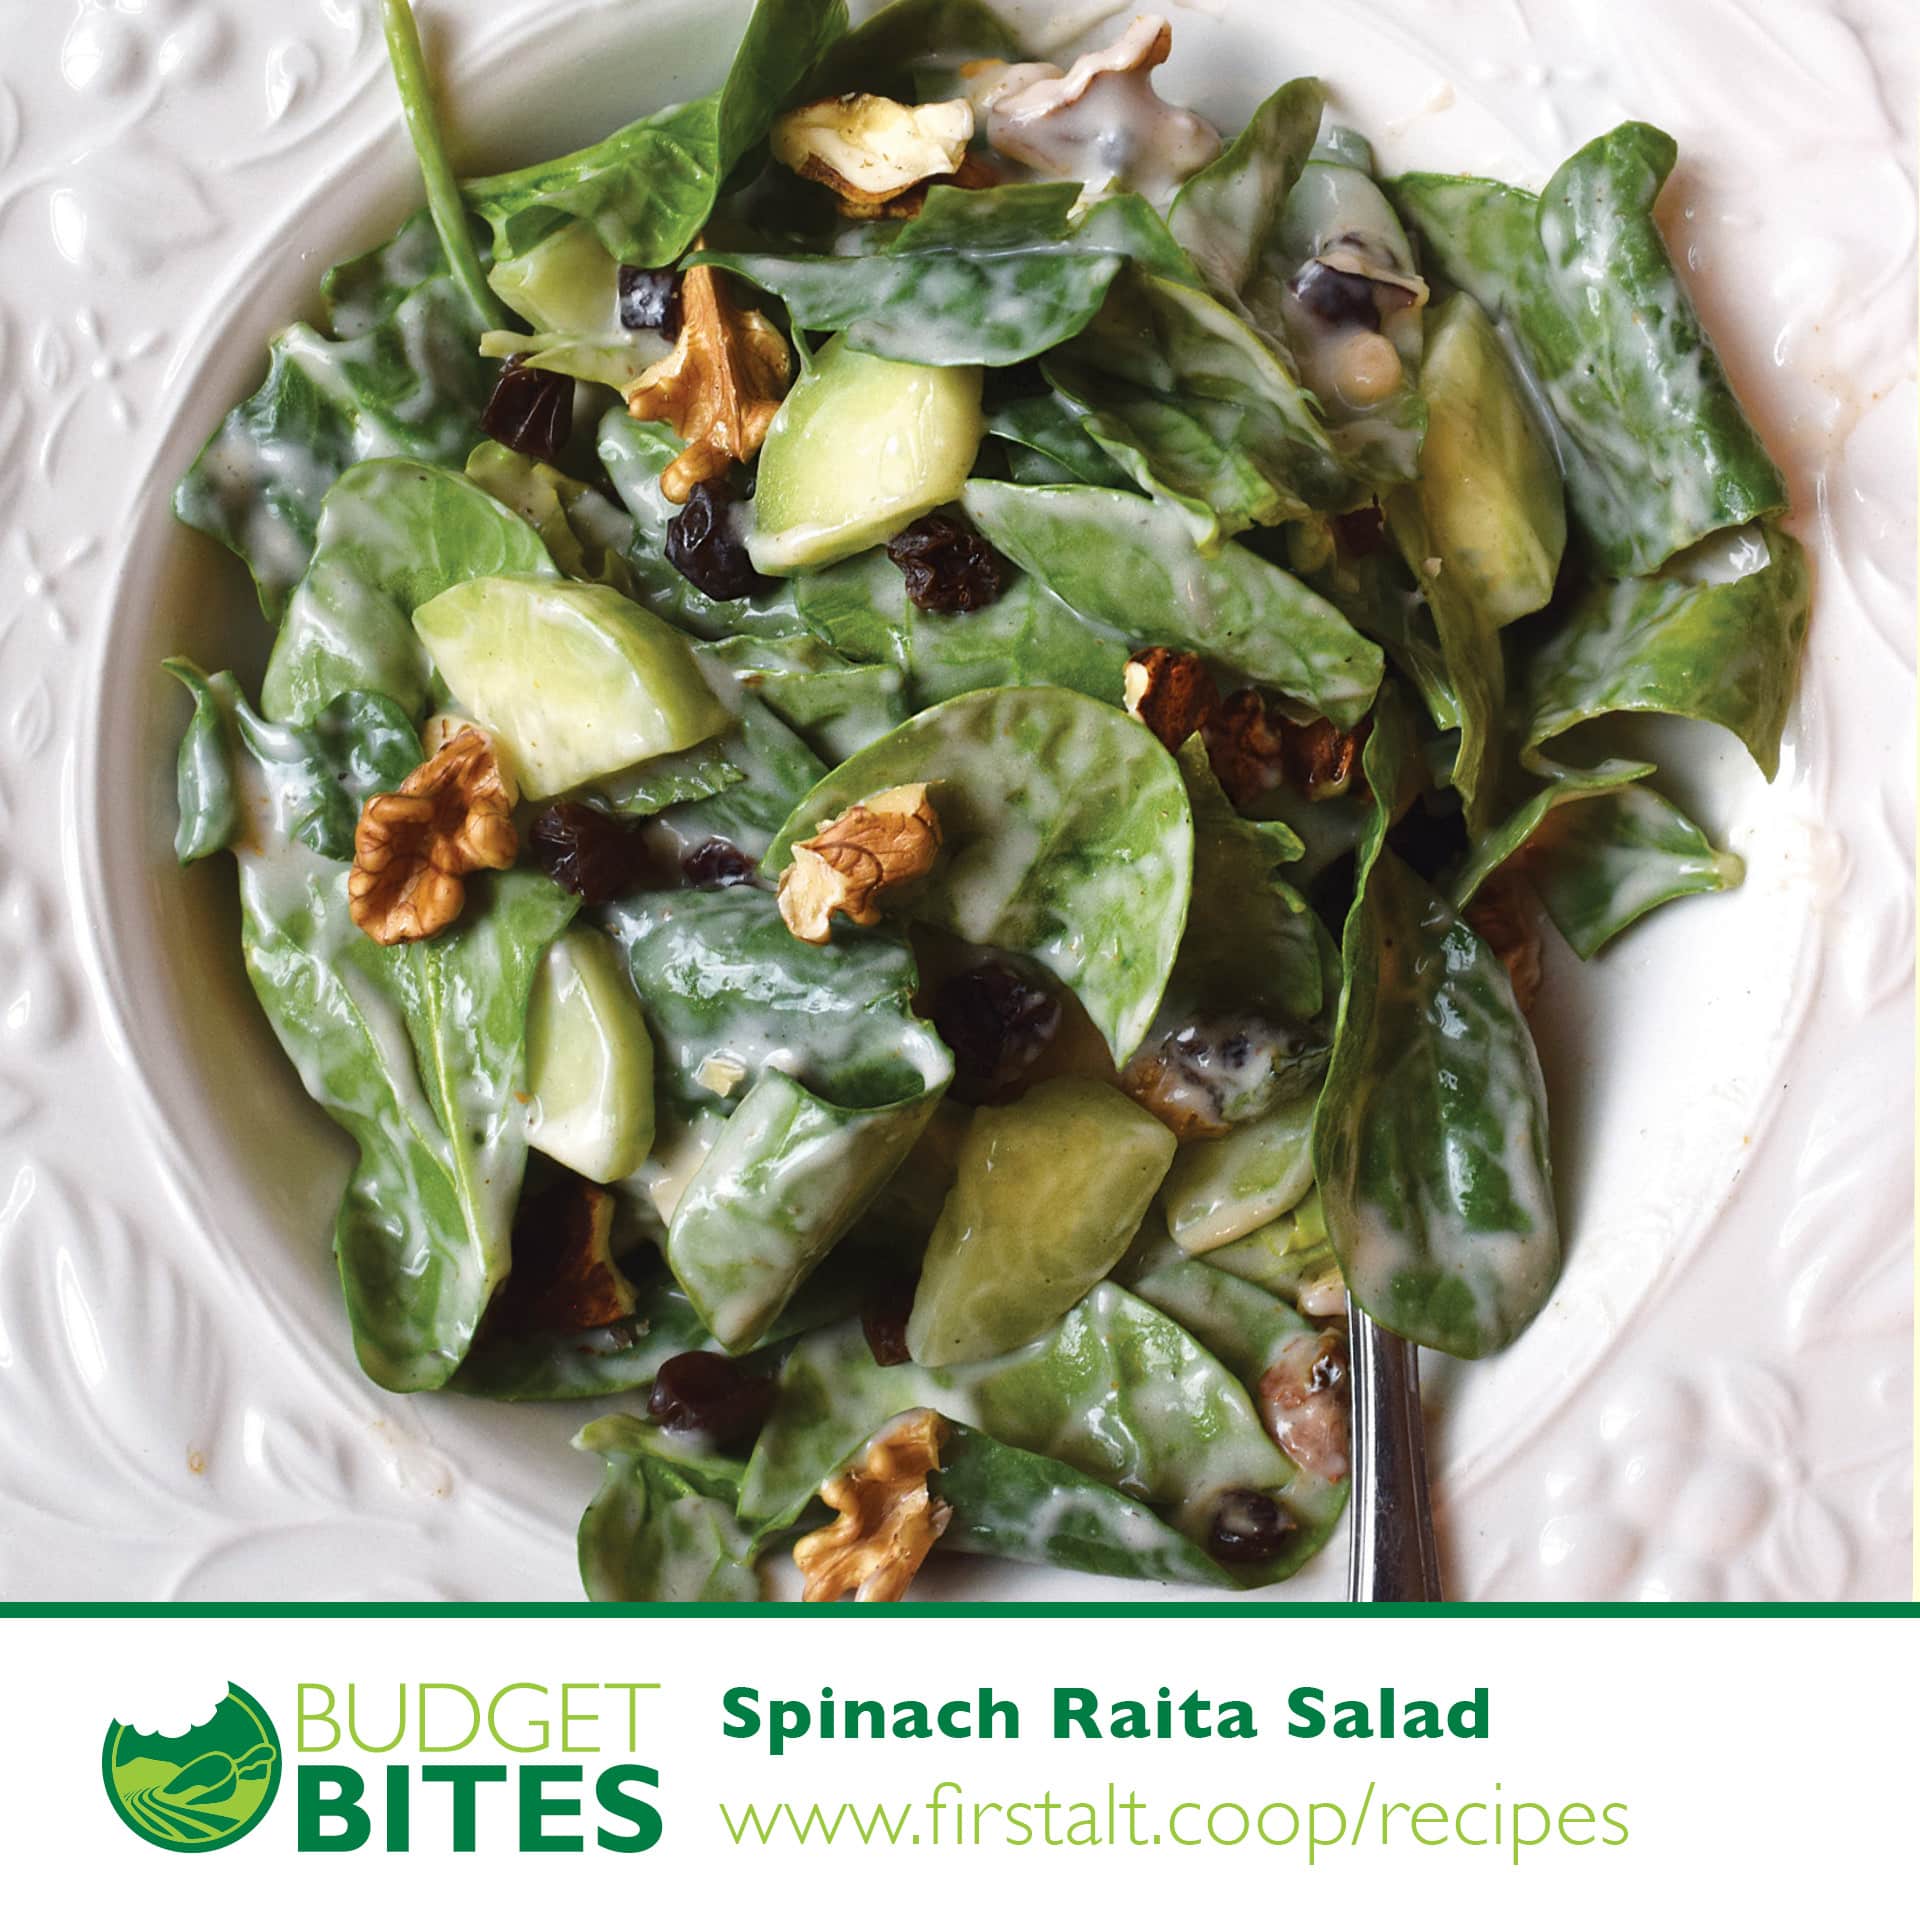 Budget Bites Online – Spinach Raita Salad